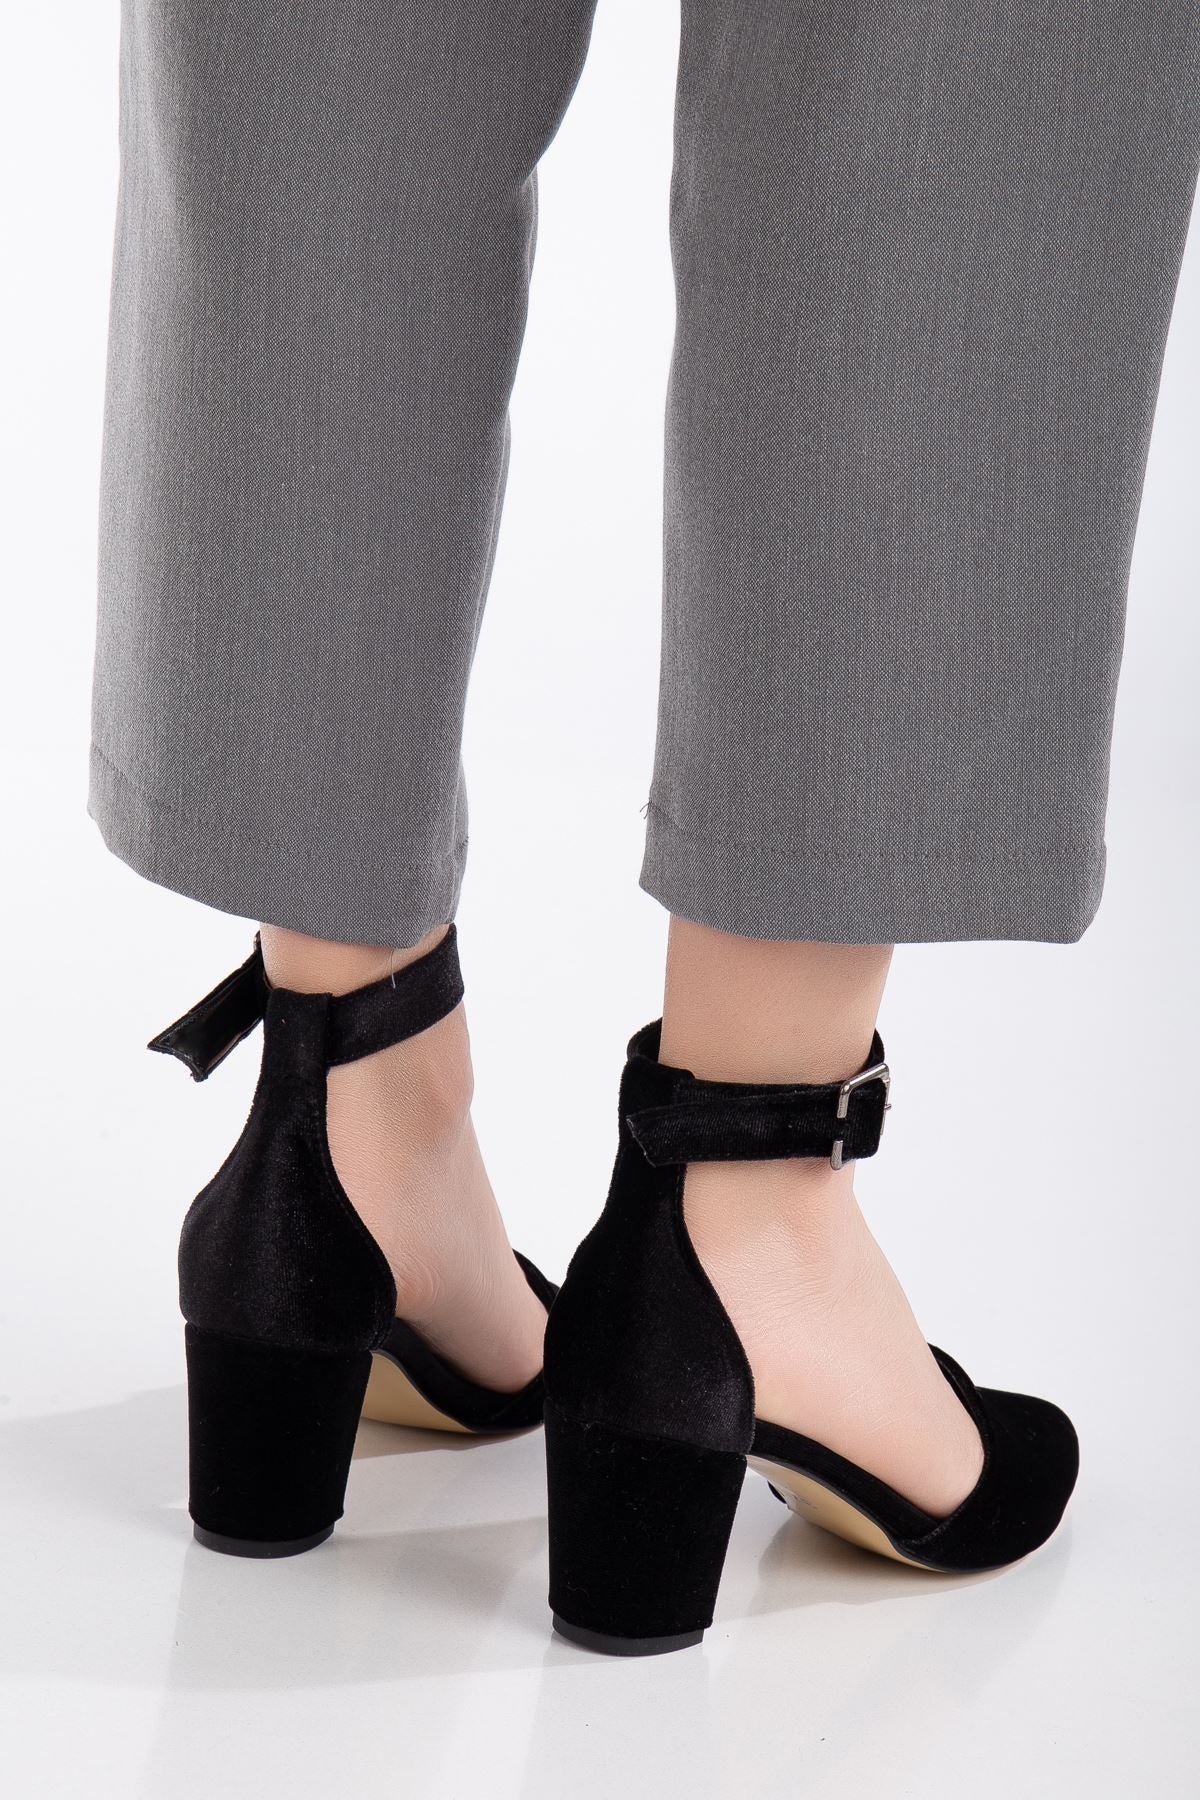 Lottis Black Velvet Detailed Heeled Women's Shoes - STREETMODE™